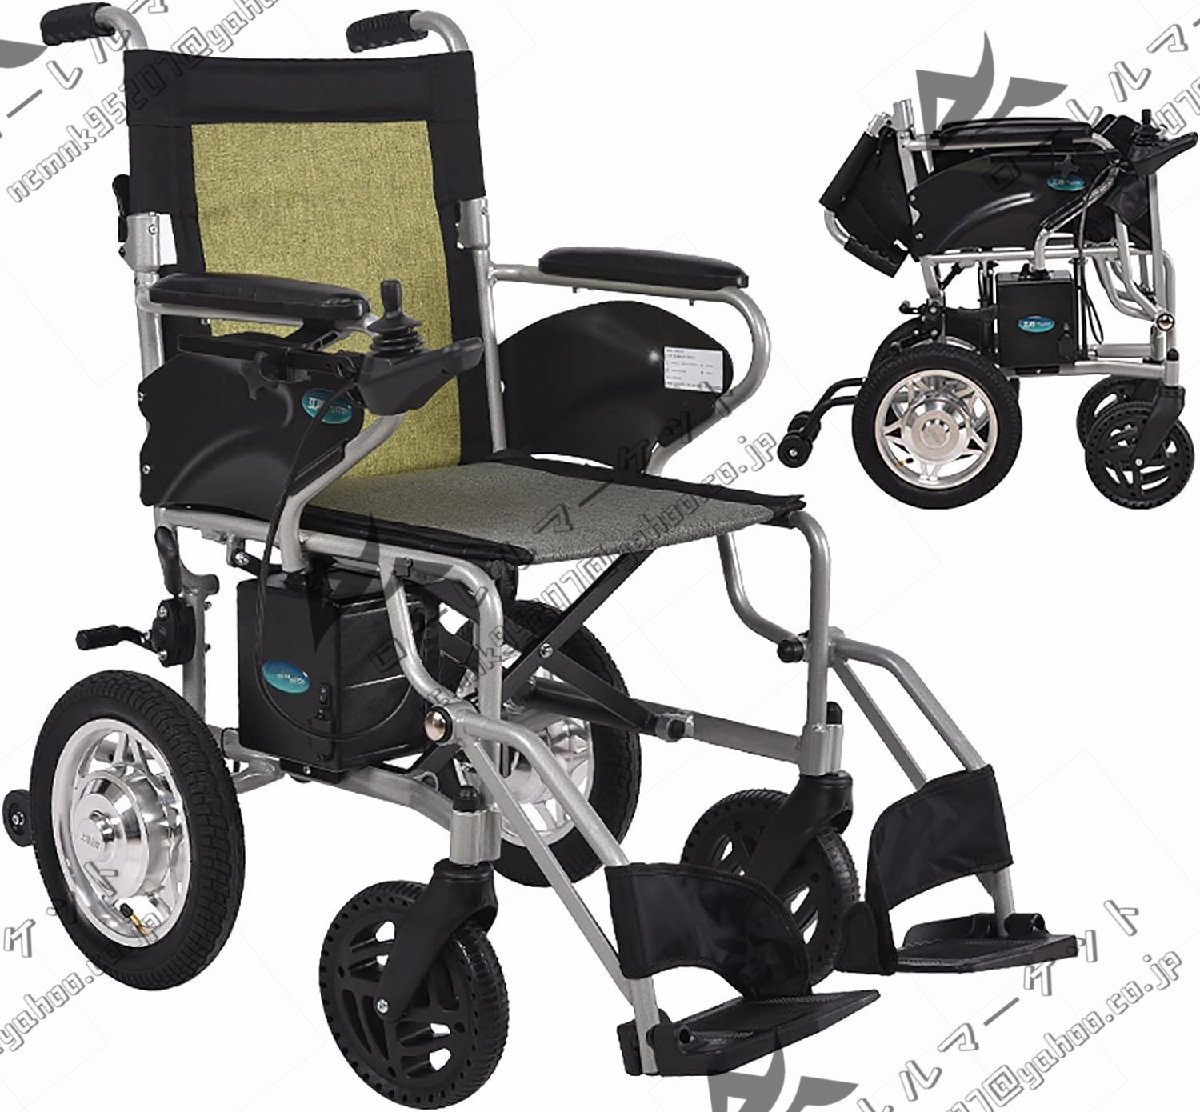 軽量電動車椅子 360° コントロール アームレスト インテリジェント ブレーキ システム 23Km 耐久性 220 ポンド負荷 屋外旅行家庭用車椅子